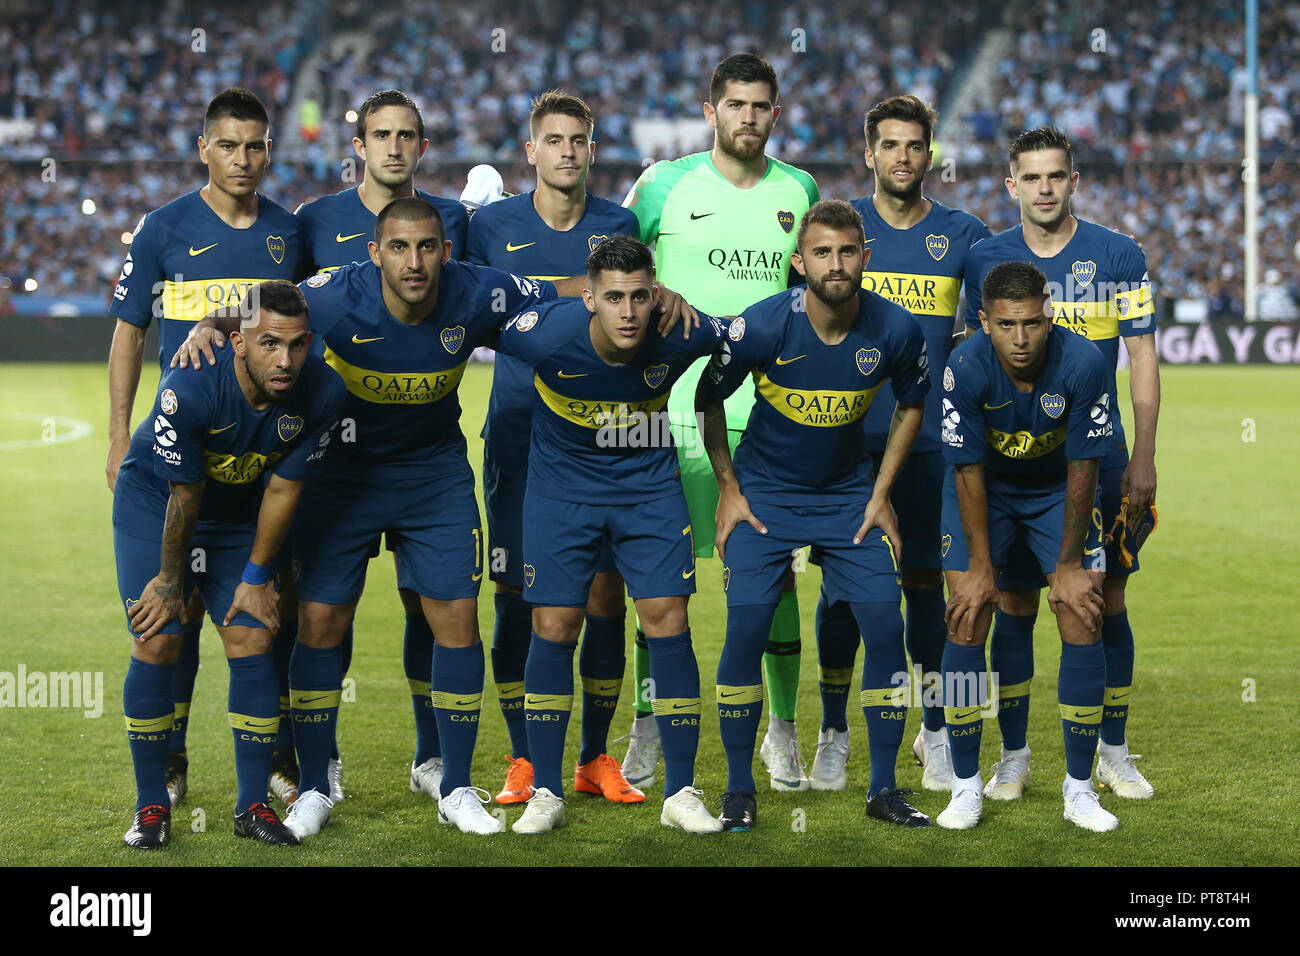 Buenos Aires, Argentina - October 07, 2018: Boca team formation against Racing in the Estadio Juan Domingo Peron in Buenos Aires, Argentina Stock Photo